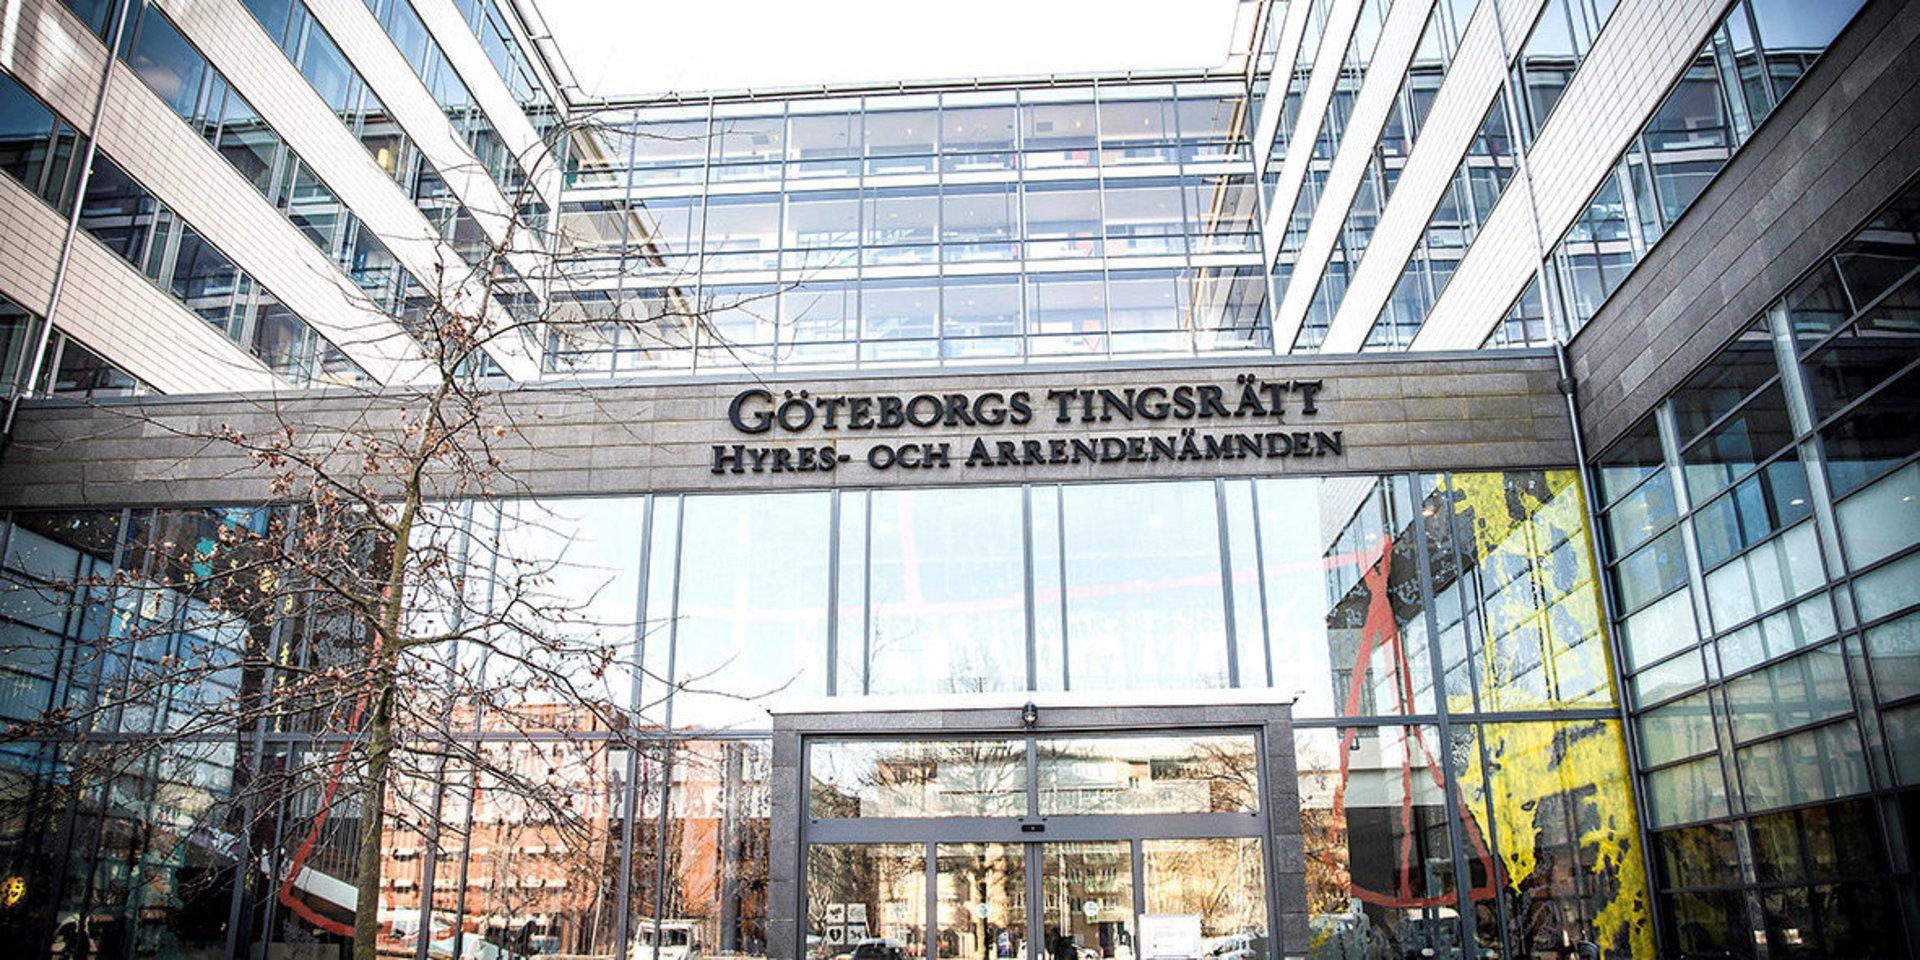 Beslut om häktning tas i Göteborgs tingsrätt.